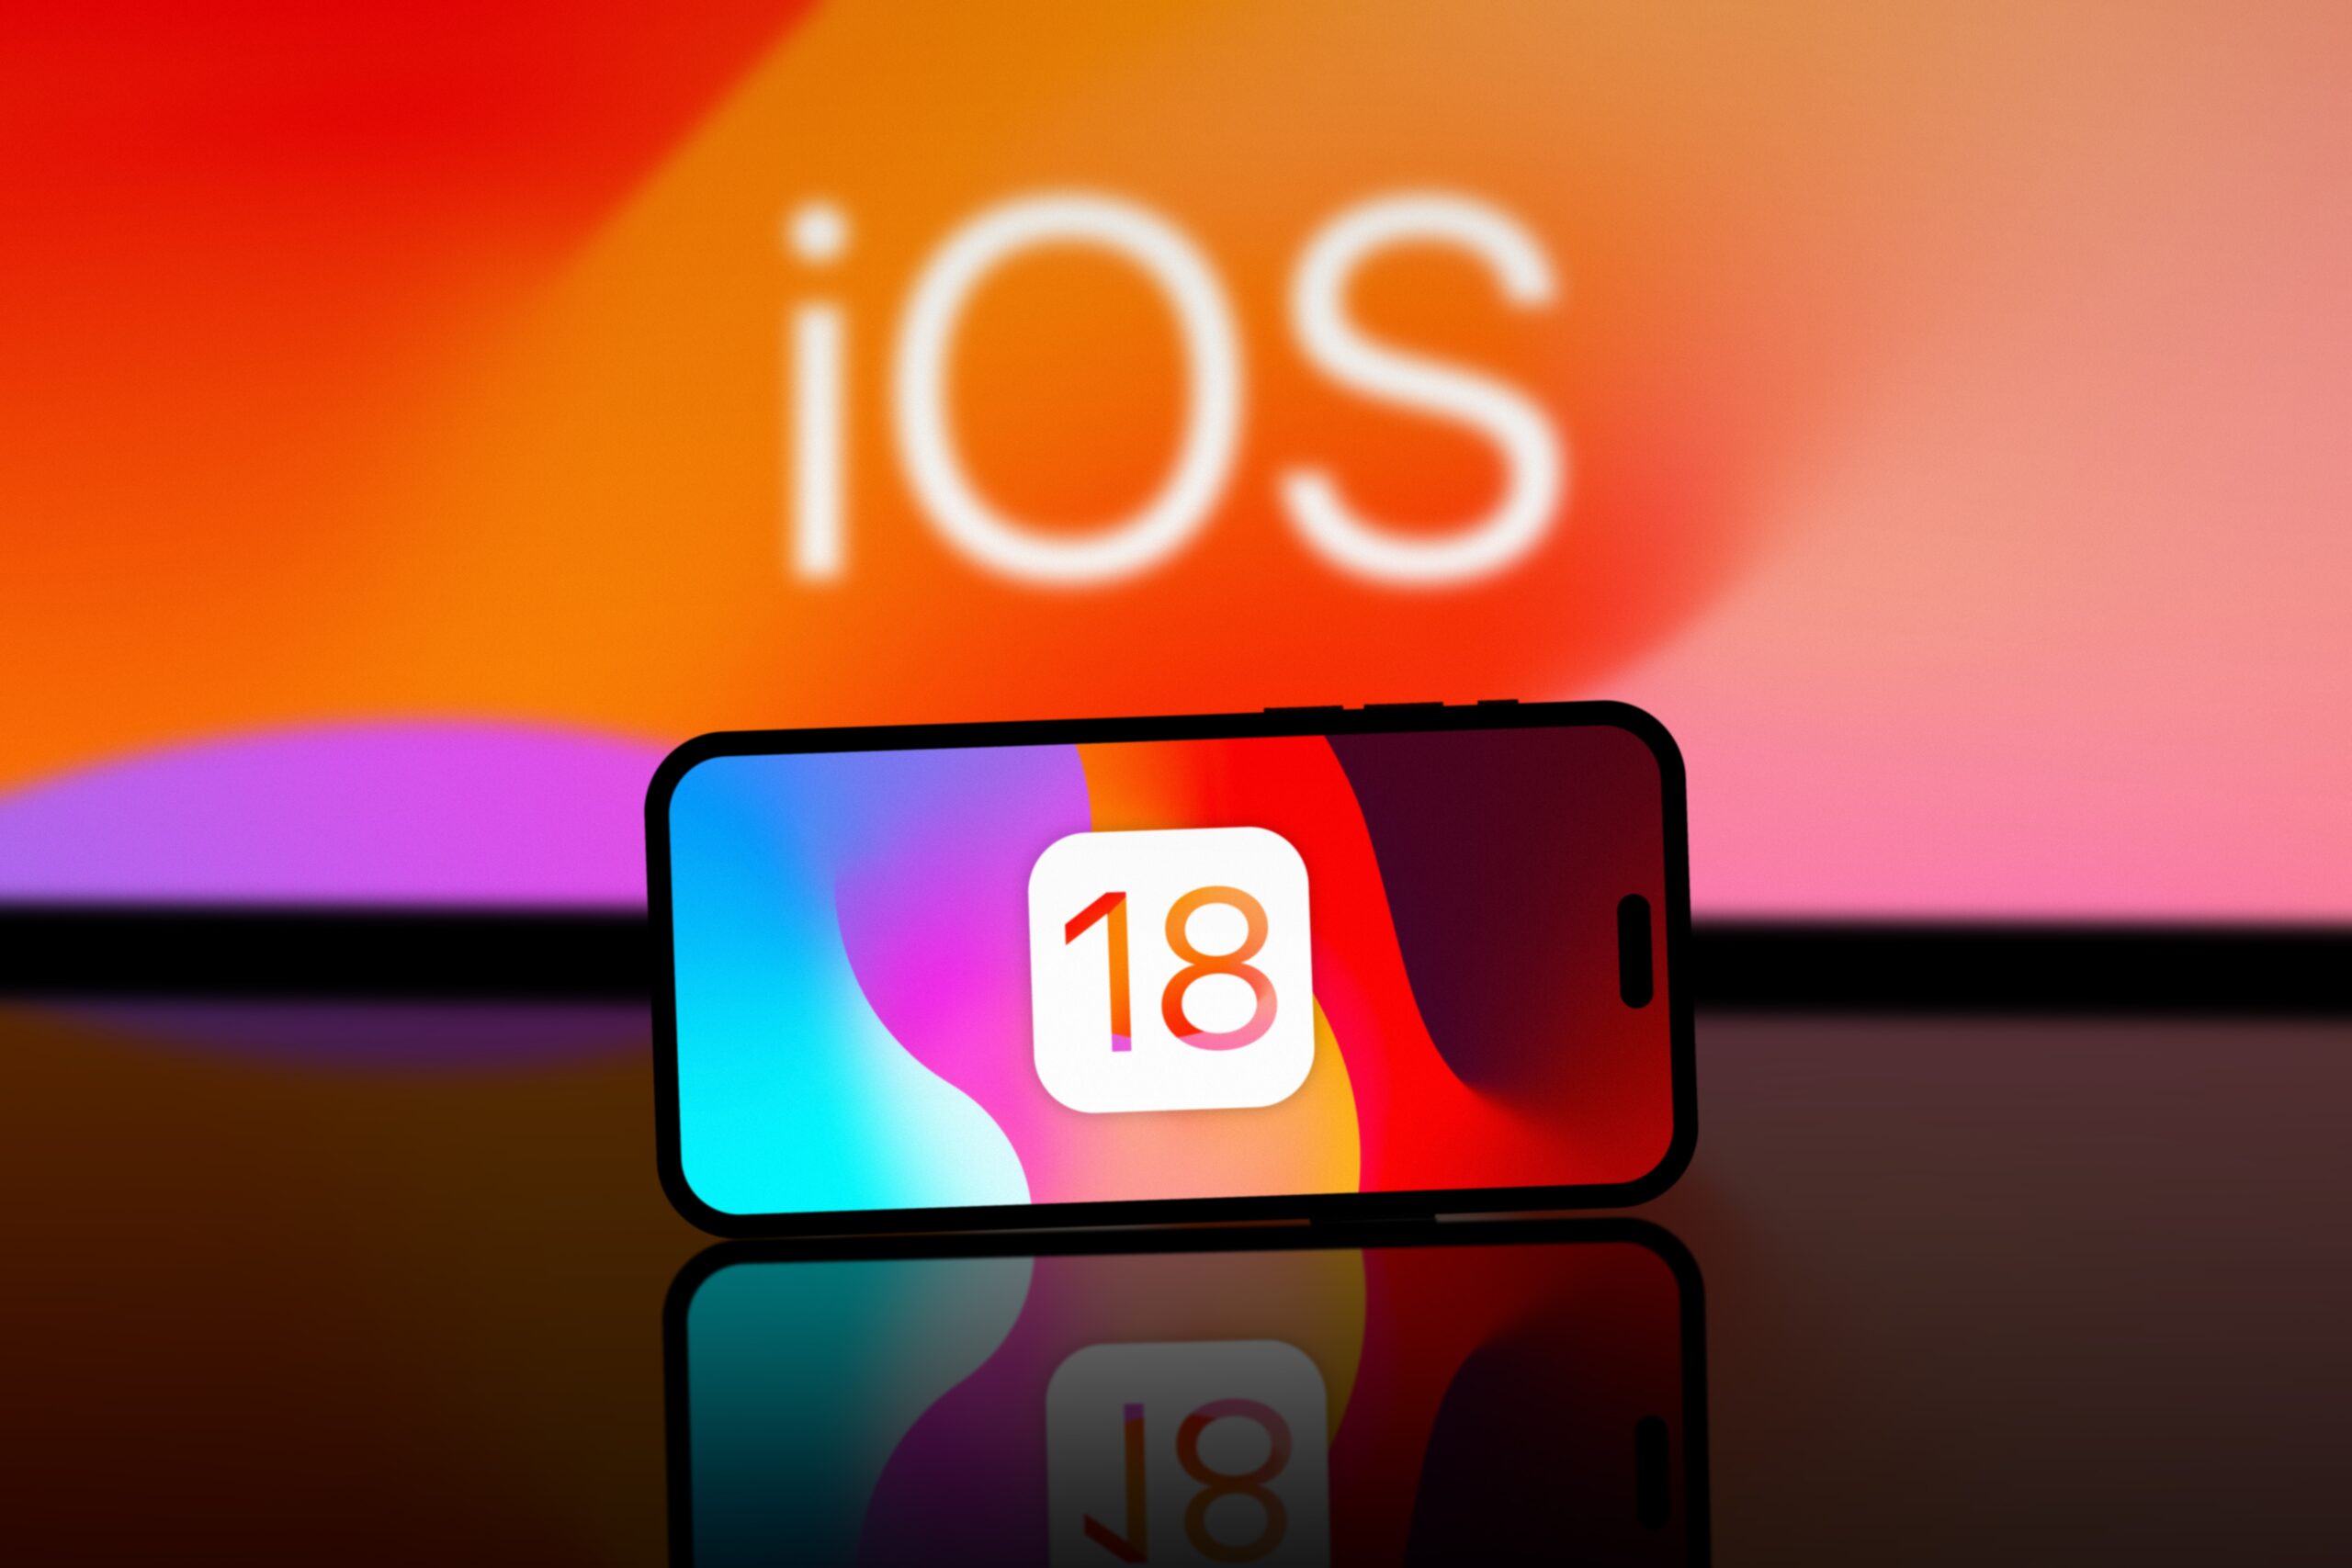 Telefon położony na refleksyjnej powierzchni z wyświetlanym logiem systemu iOS 18 na tle oświetlonym nasyconymi kolorami.